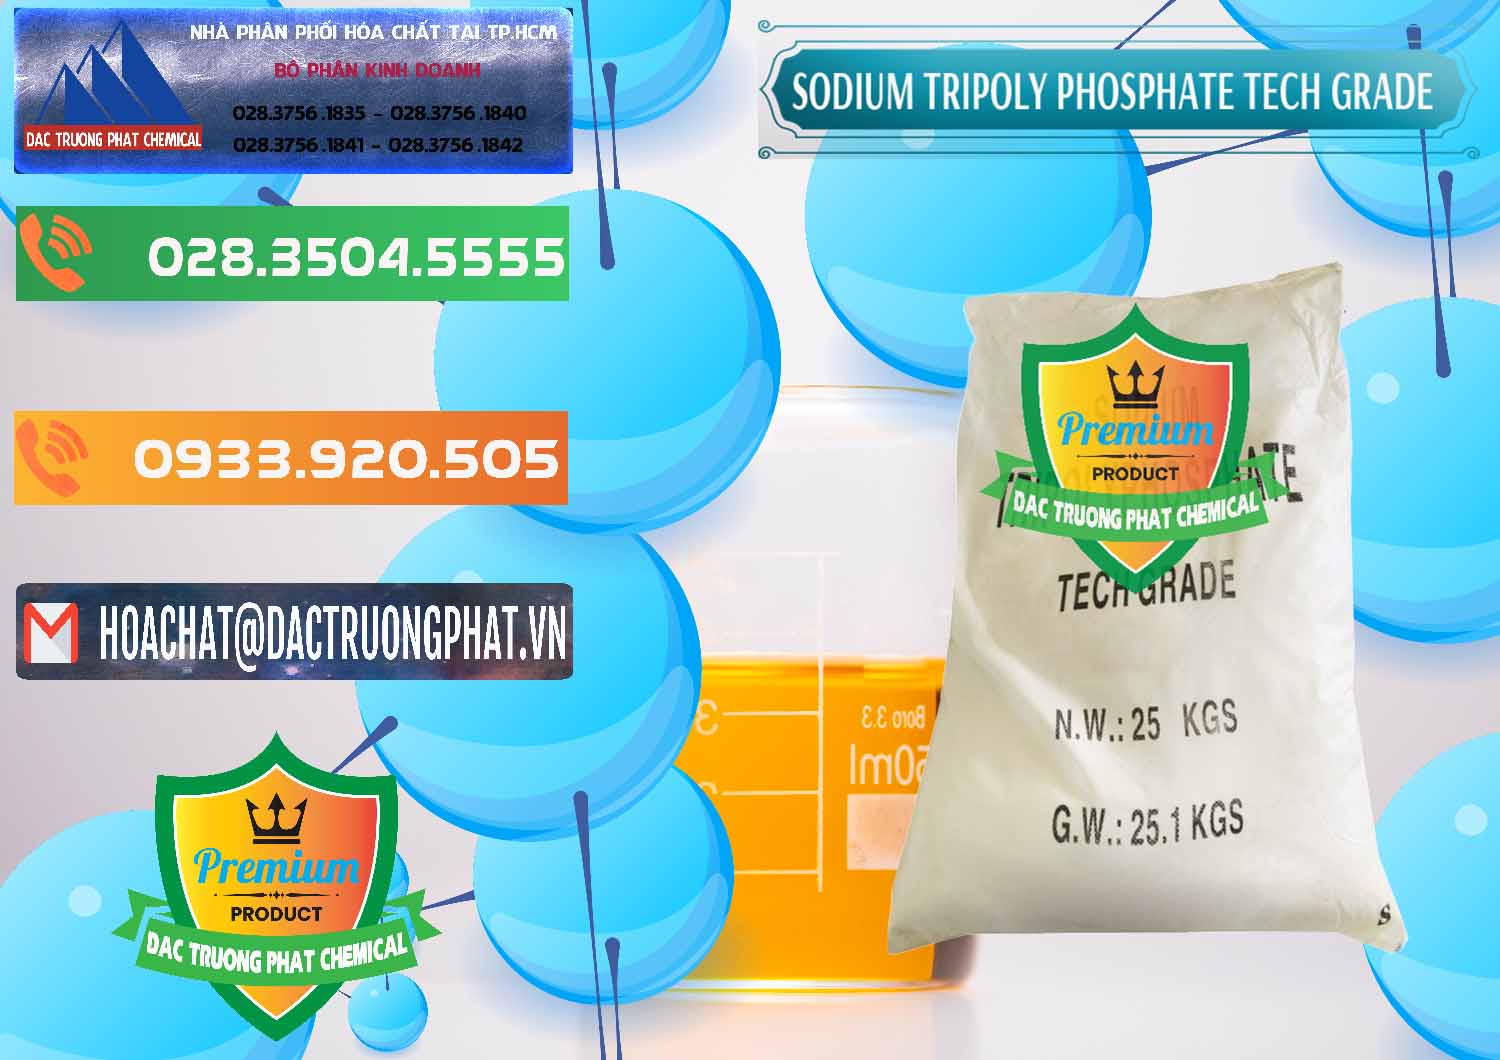 Bán - cung ứng Sodium Tripoly Phosphate - STPP Tech Grade Trung Quốc China - 0453 - Chuyên cung cấp _ phân phối hóa chất tại TP.HCM - hoachatxulynuoc.com.vn